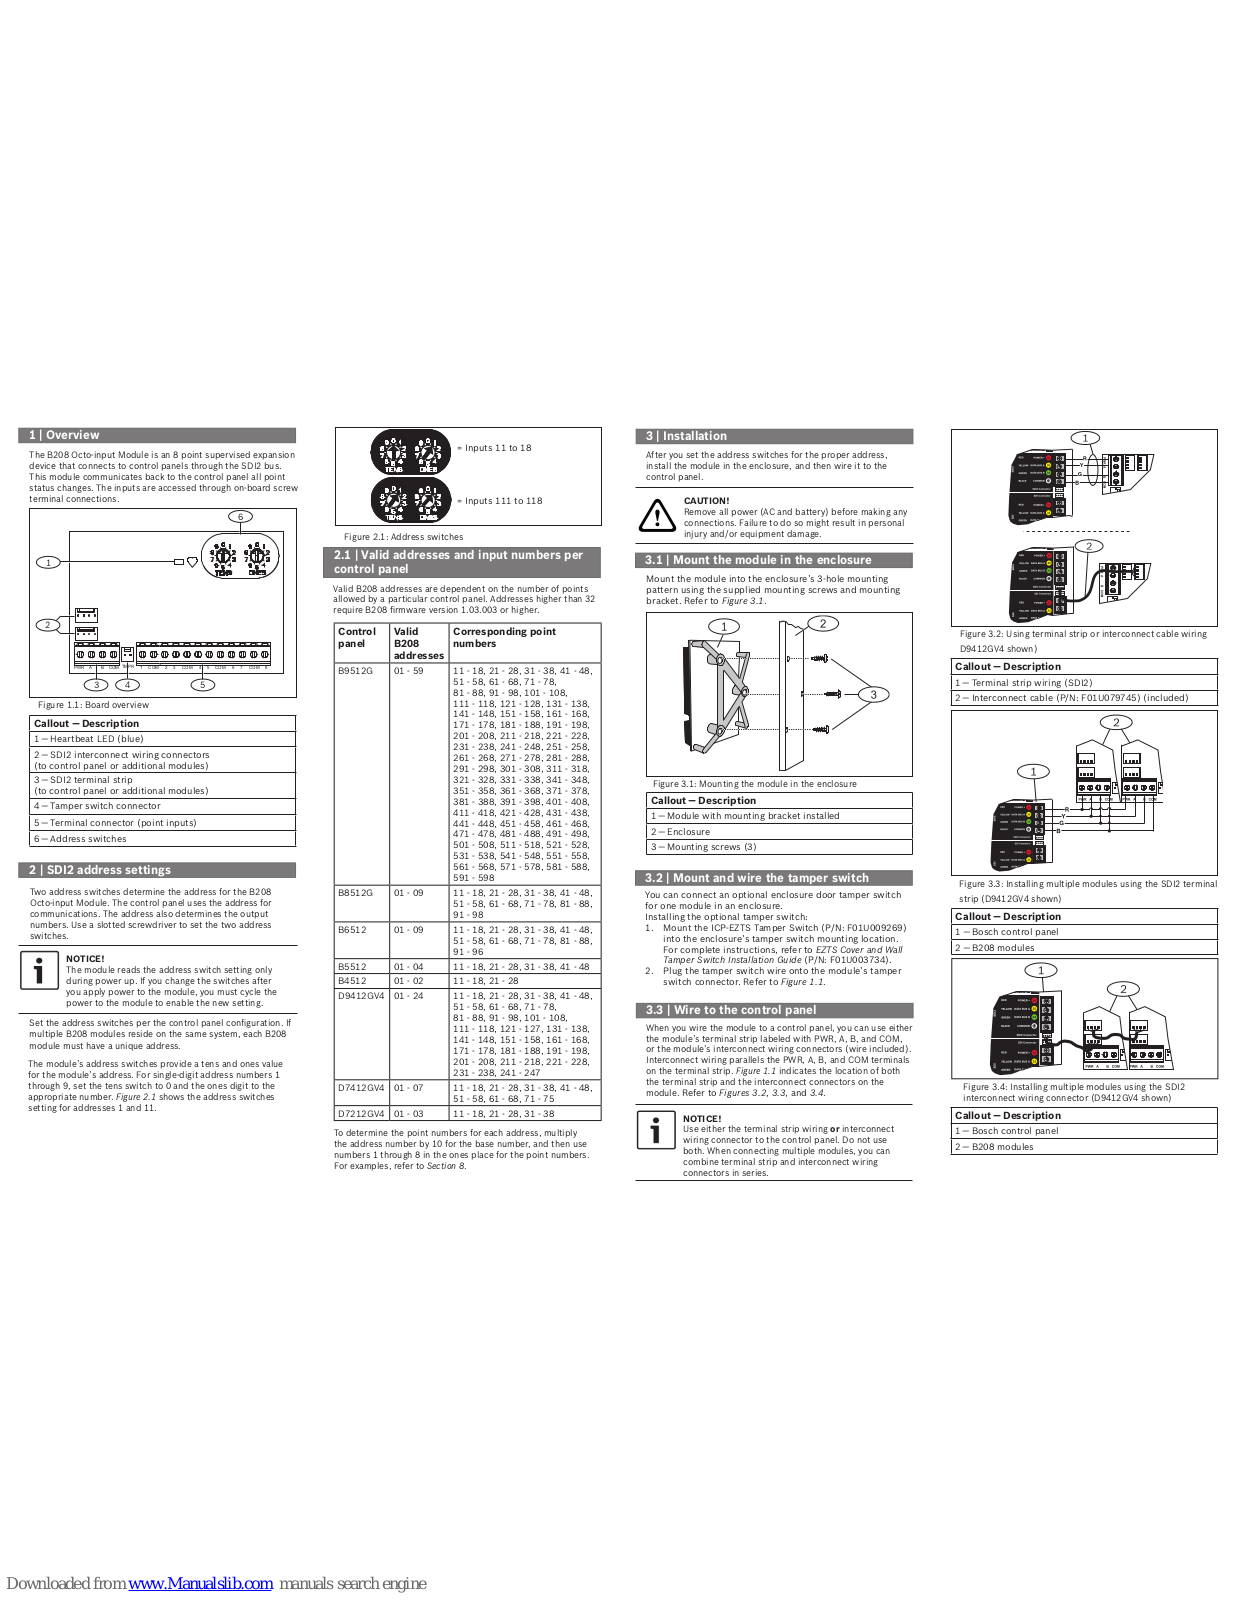 Bosch B208 Installation Manual